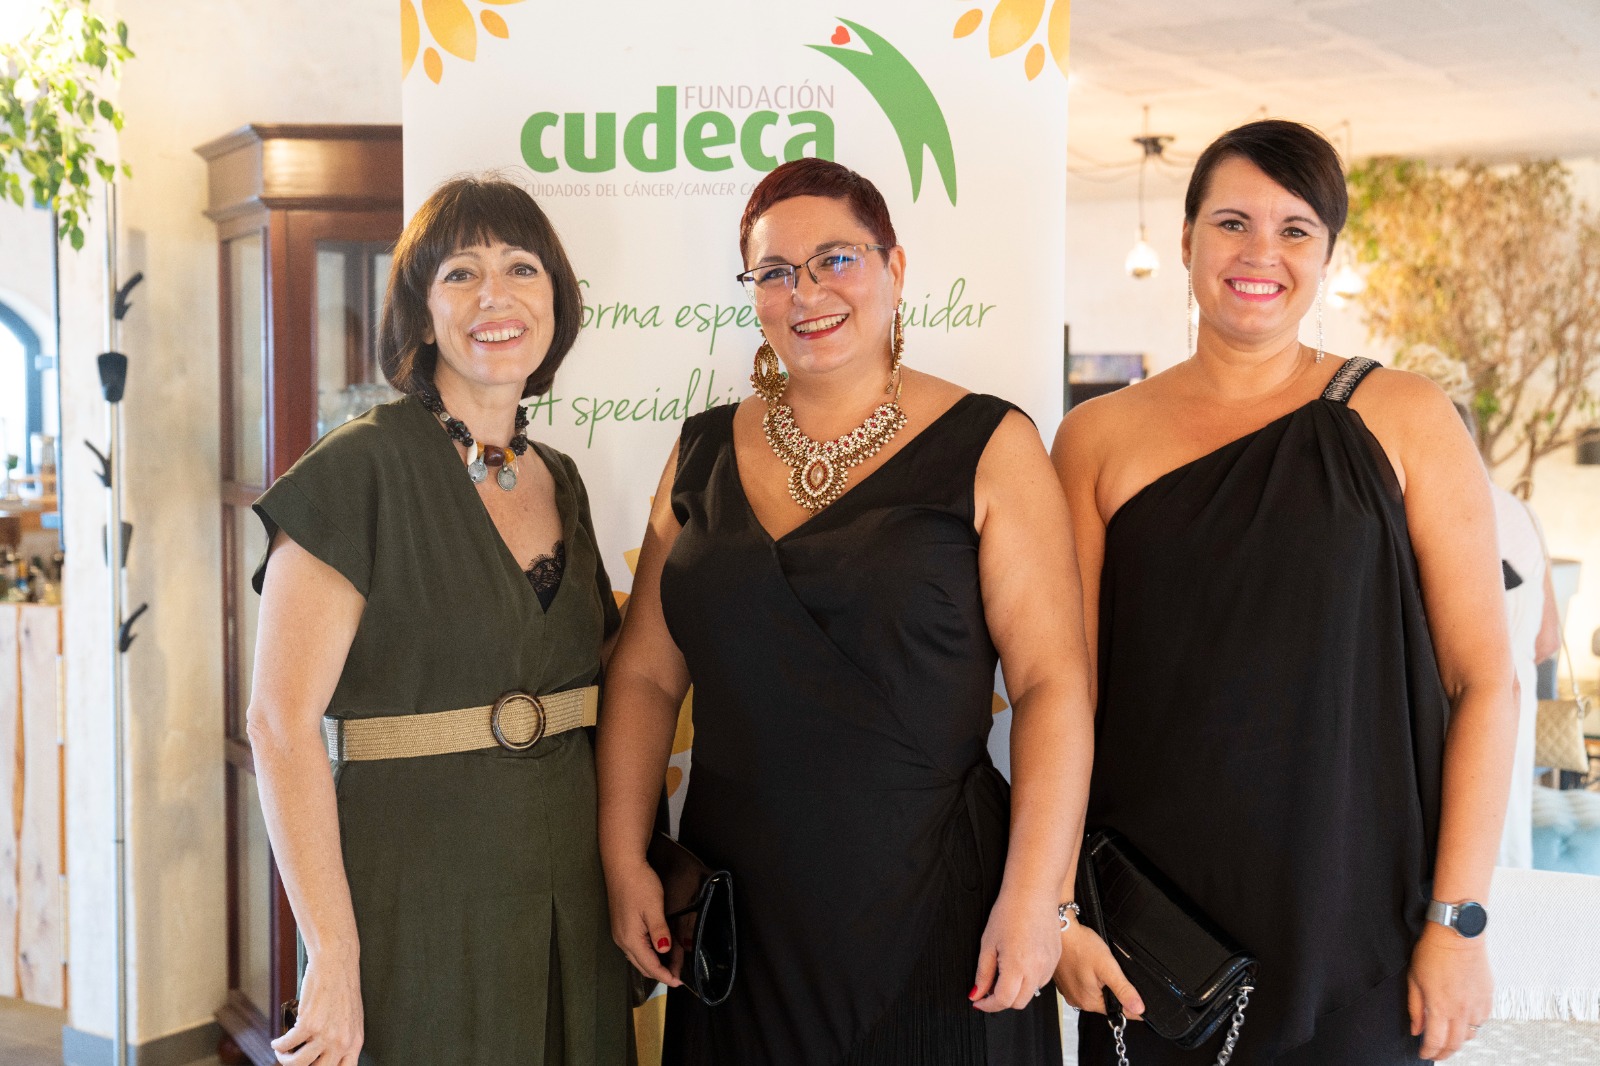 La fiesta benéfica de fin de verano de Costa Women sorprende a todos con una gran recaudación de 900 euros para Cudeca